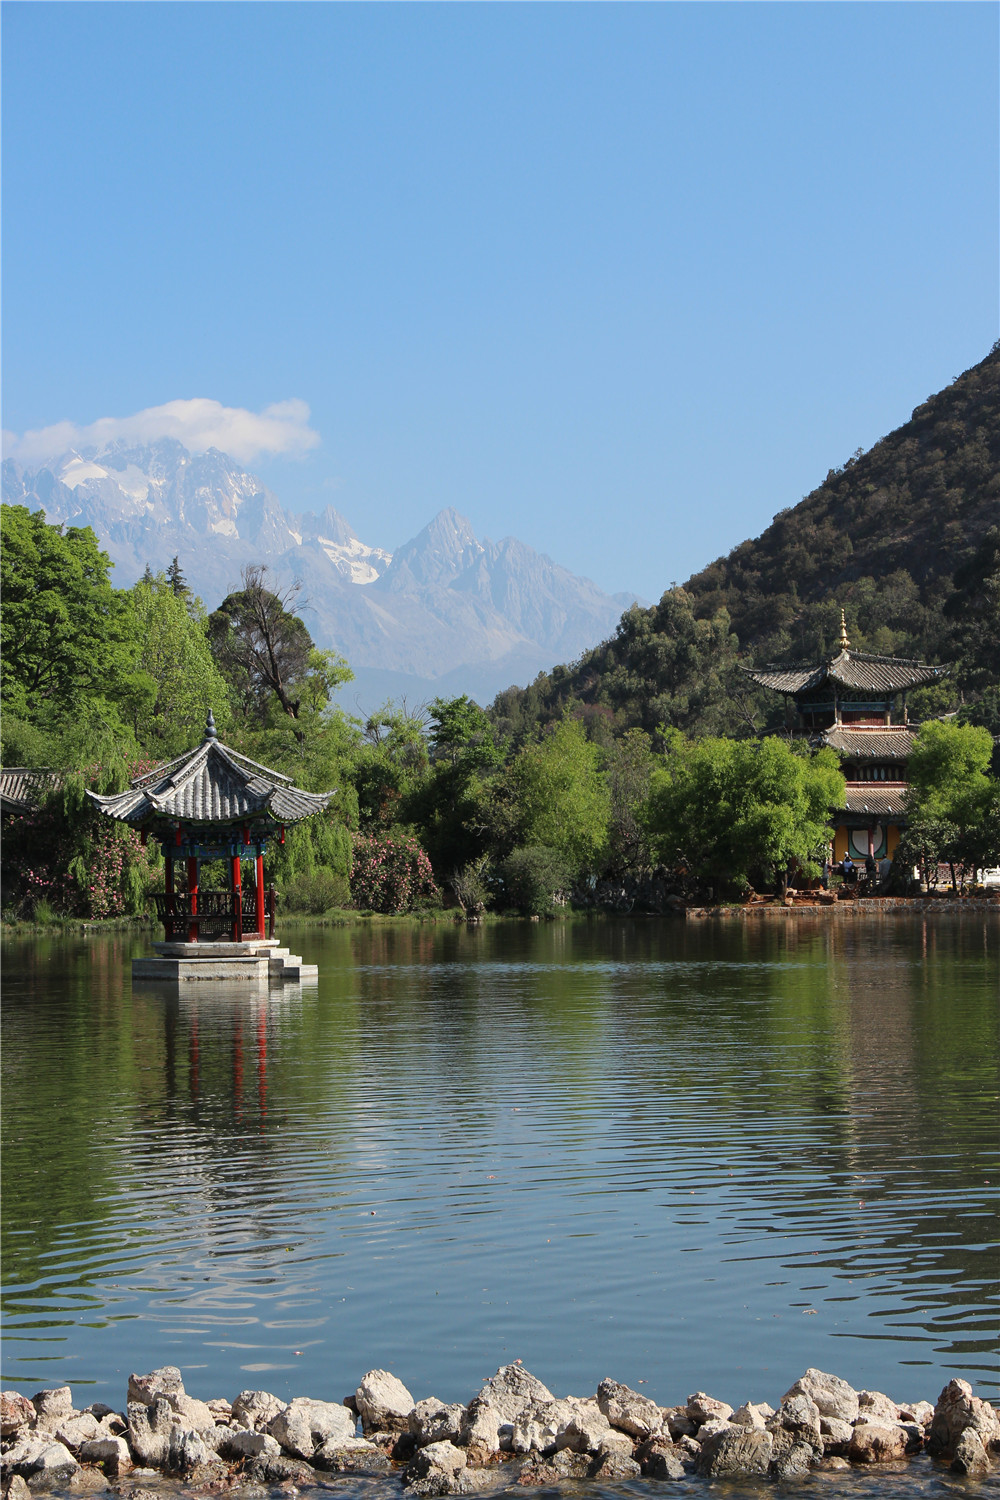 Китай, провинция Юньнань, г. Лицзян, вид на "Снежную вершину горы Нефритового дракона" от "Пруда Чёрного дракона", весна 2014г.